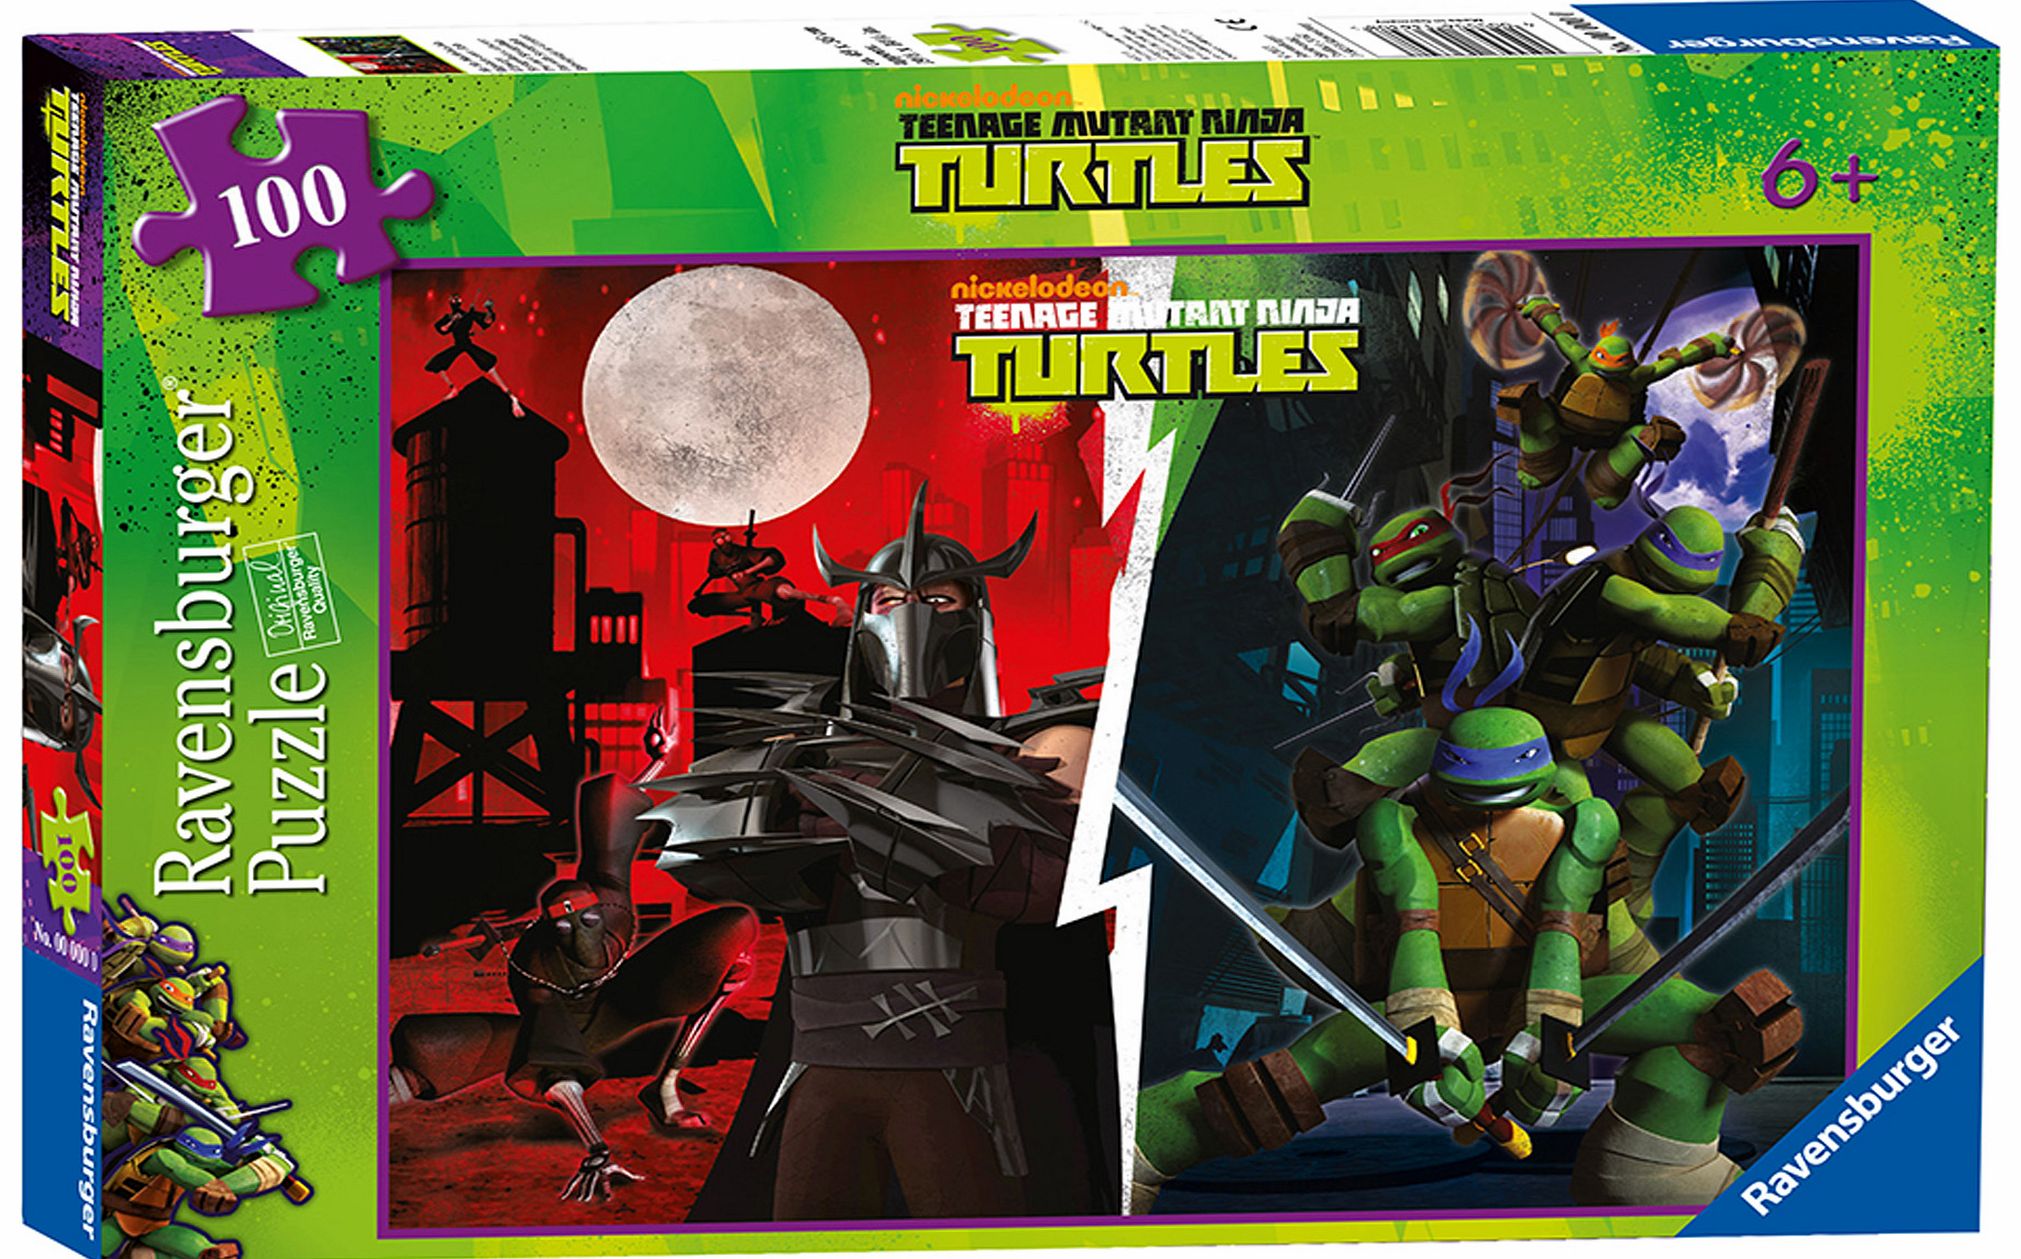 Teenage Mutant Ninja Turtles 100 Piece Jigsaw